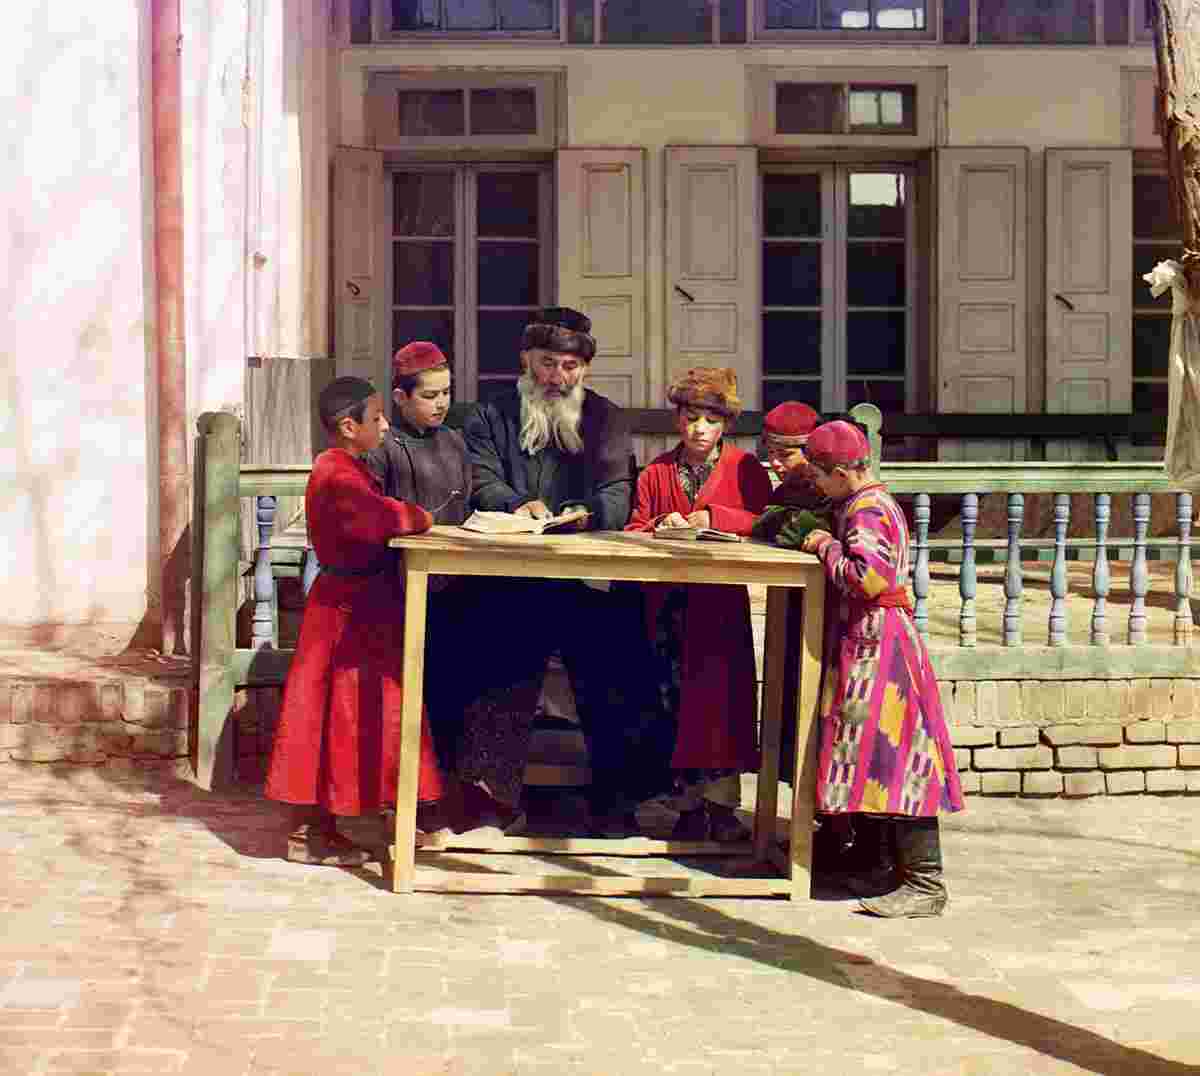 Samarkand. A group of Jewish children with a teacher, 1905